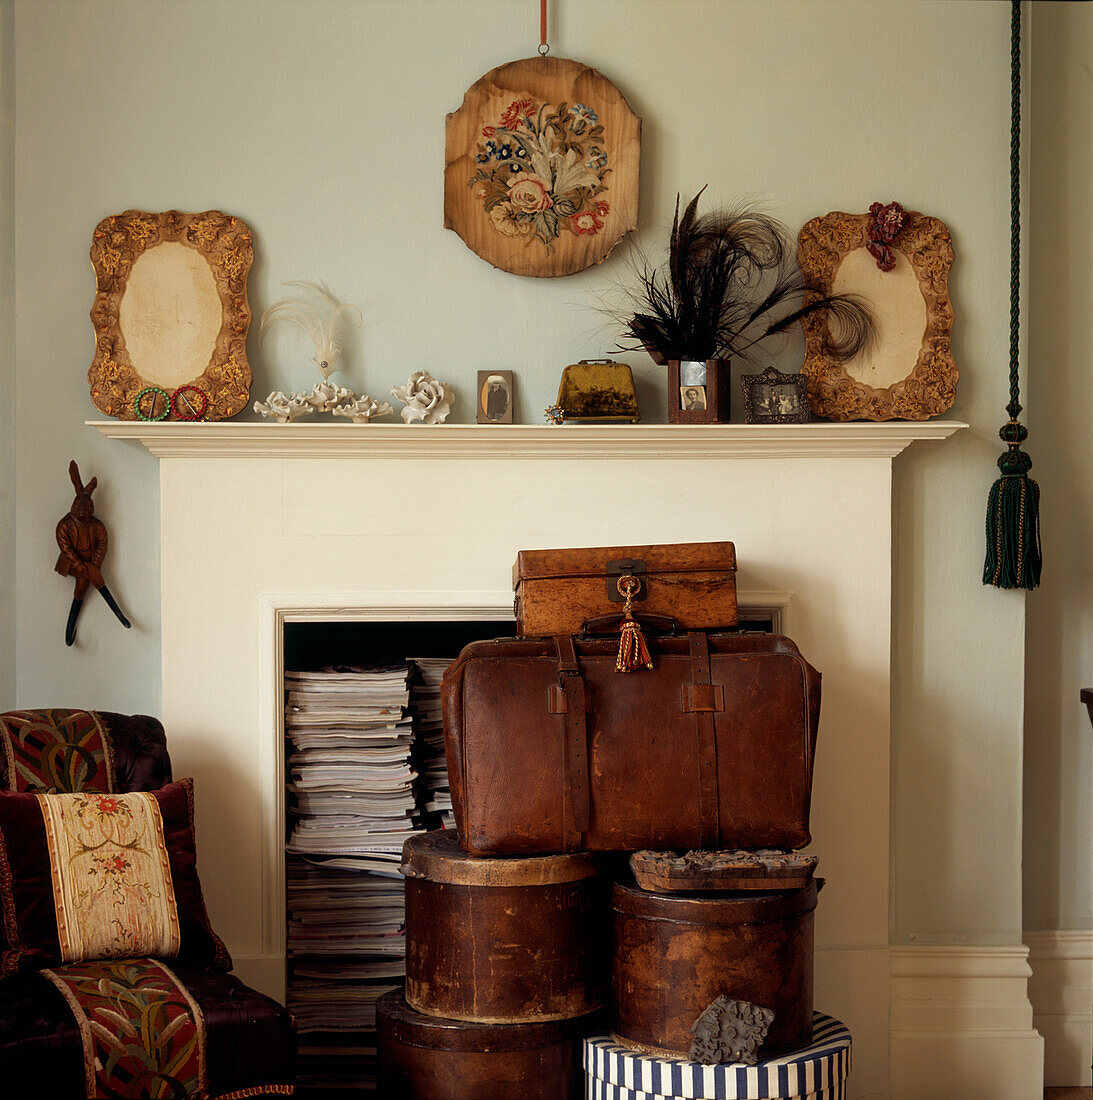 Viktorianischer Kamin, gefüllt mit Zeitschriften und Erinnerungsstücken, davor Hutschachteln und Lederkoffer